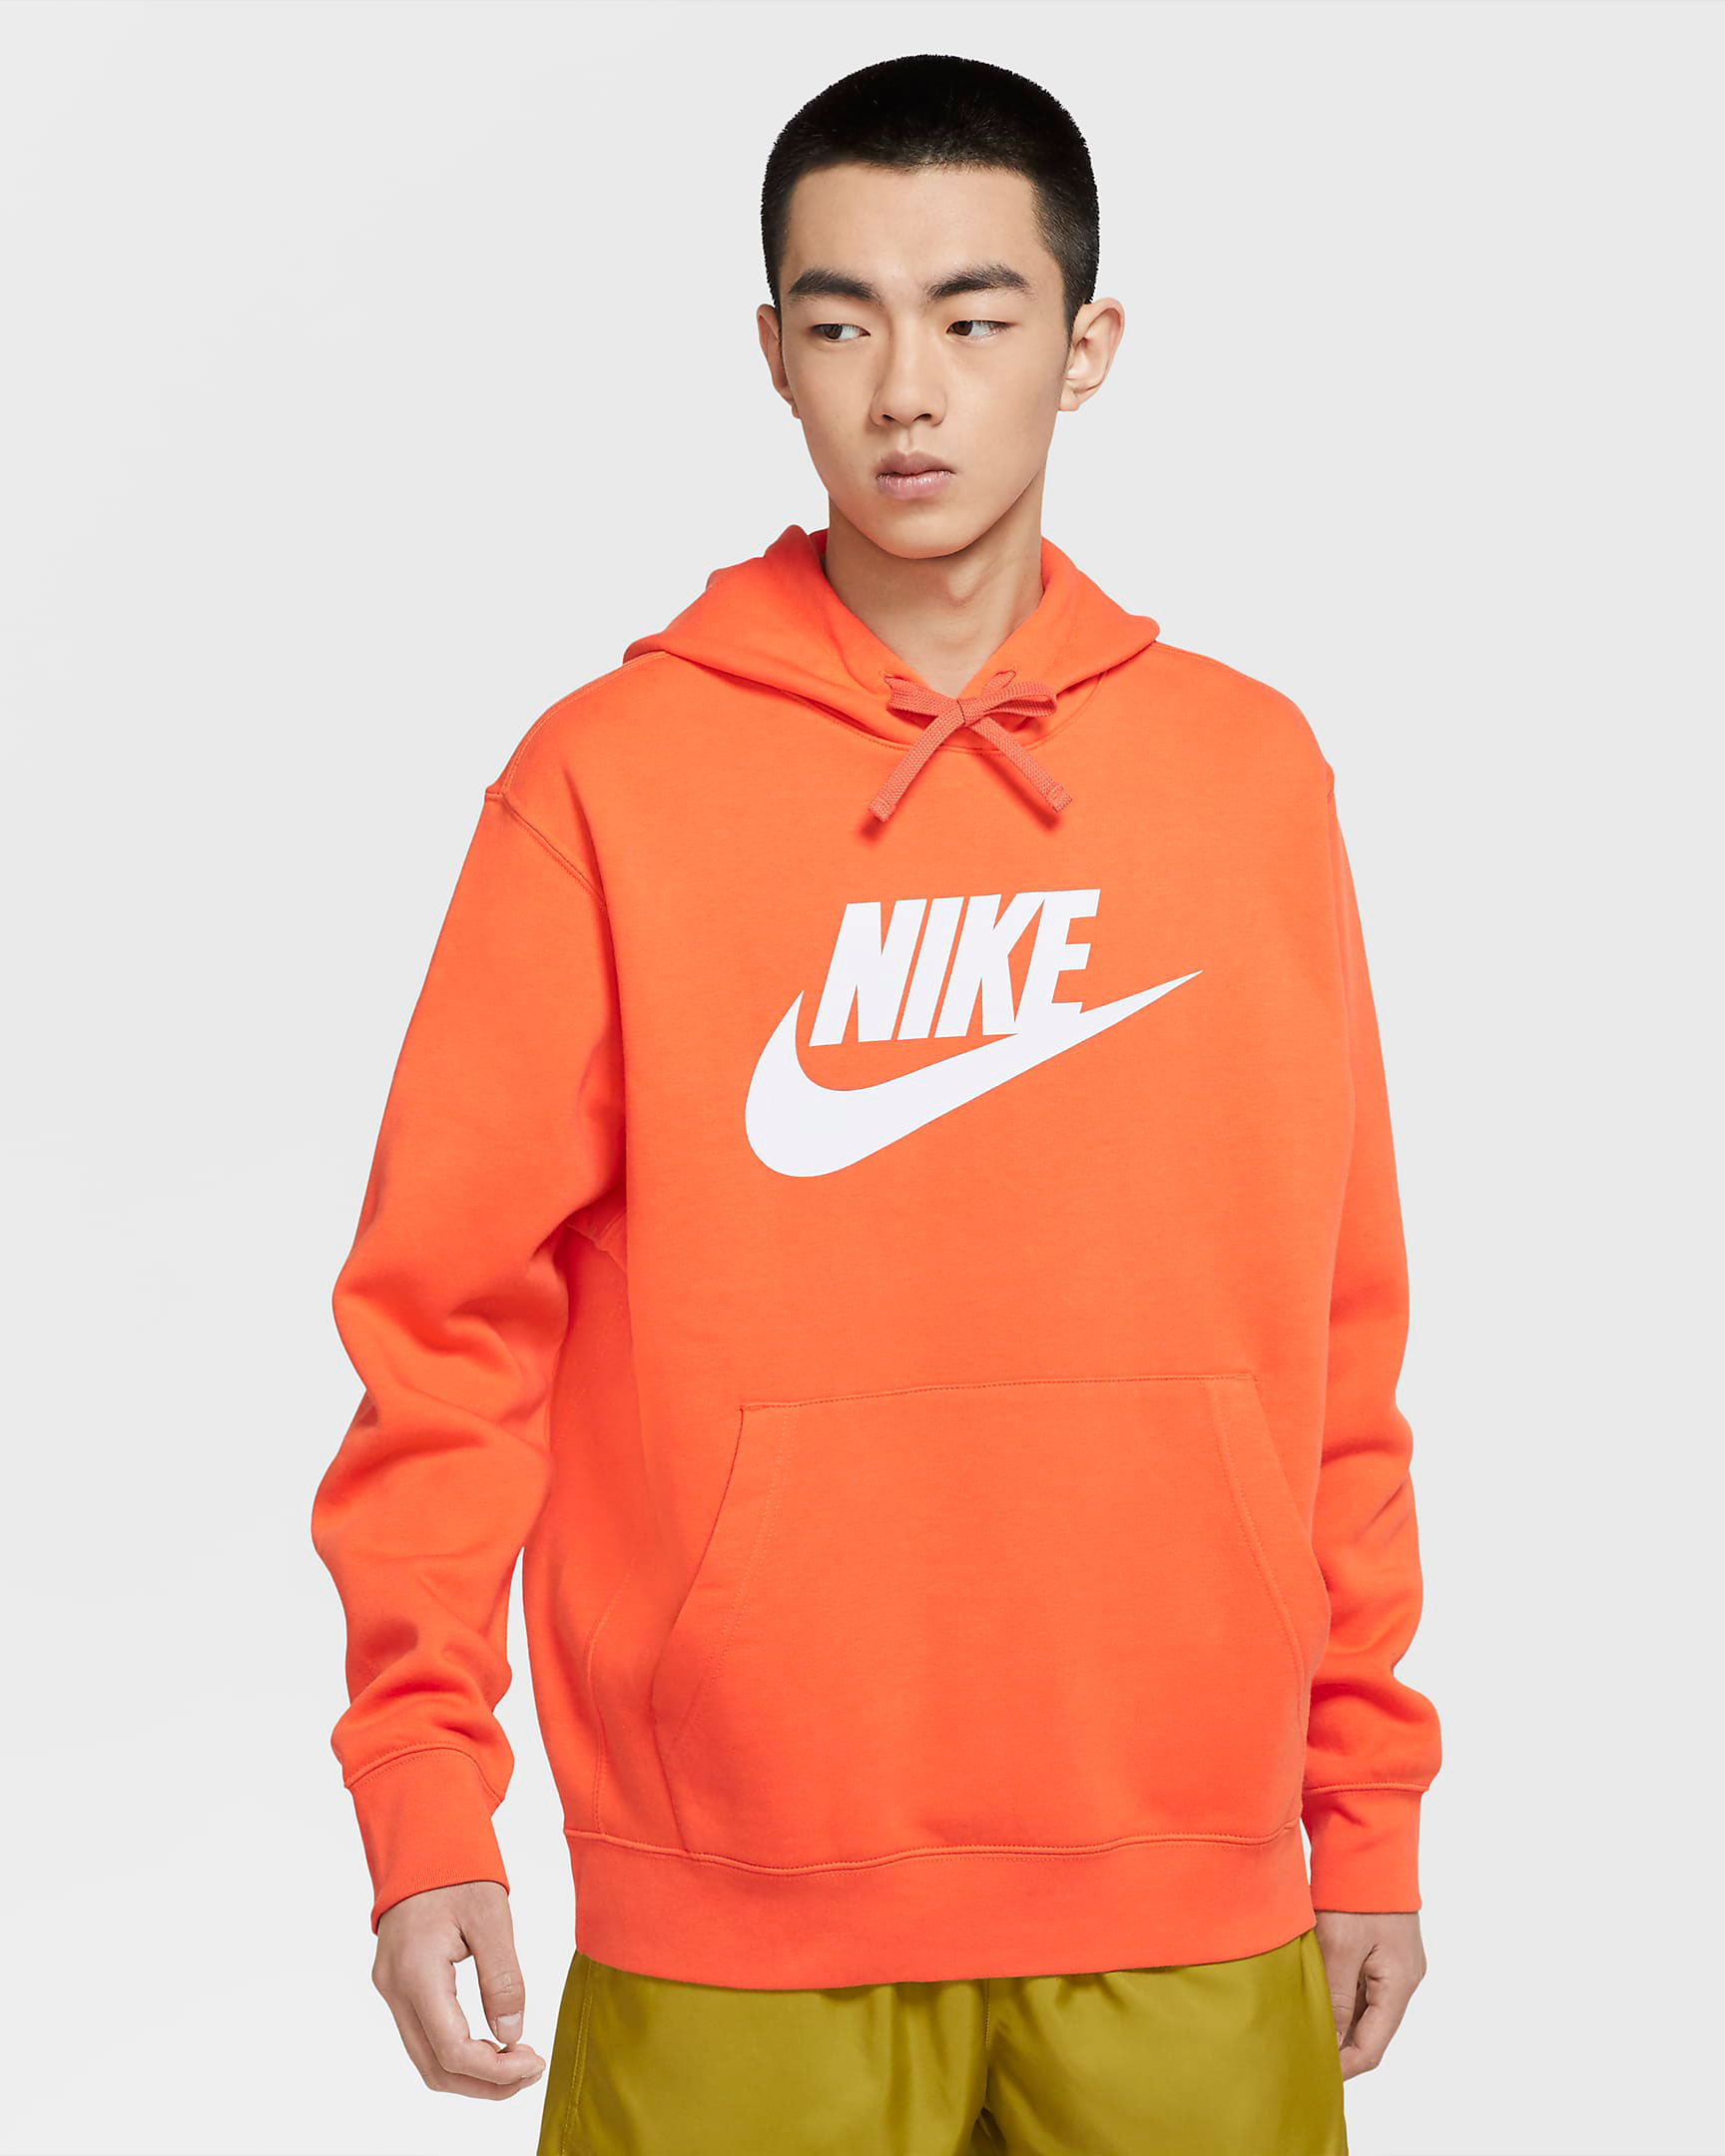 nike-pg-4-gatorade-gx-orange-hoodie-match